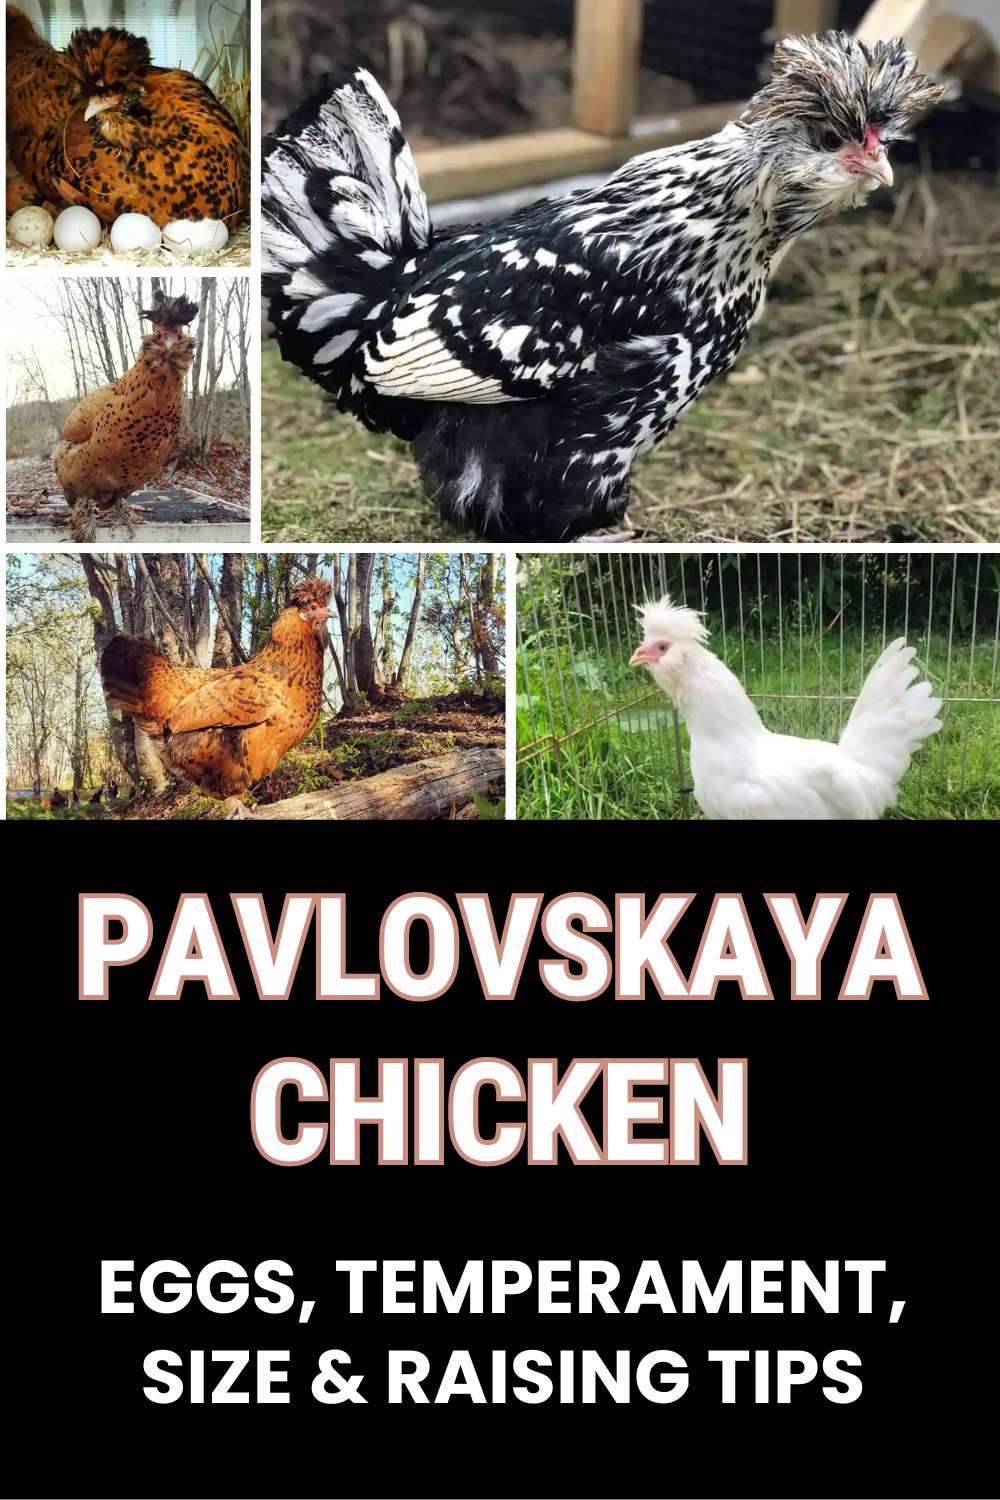 Pavlovskaya Chicken guide